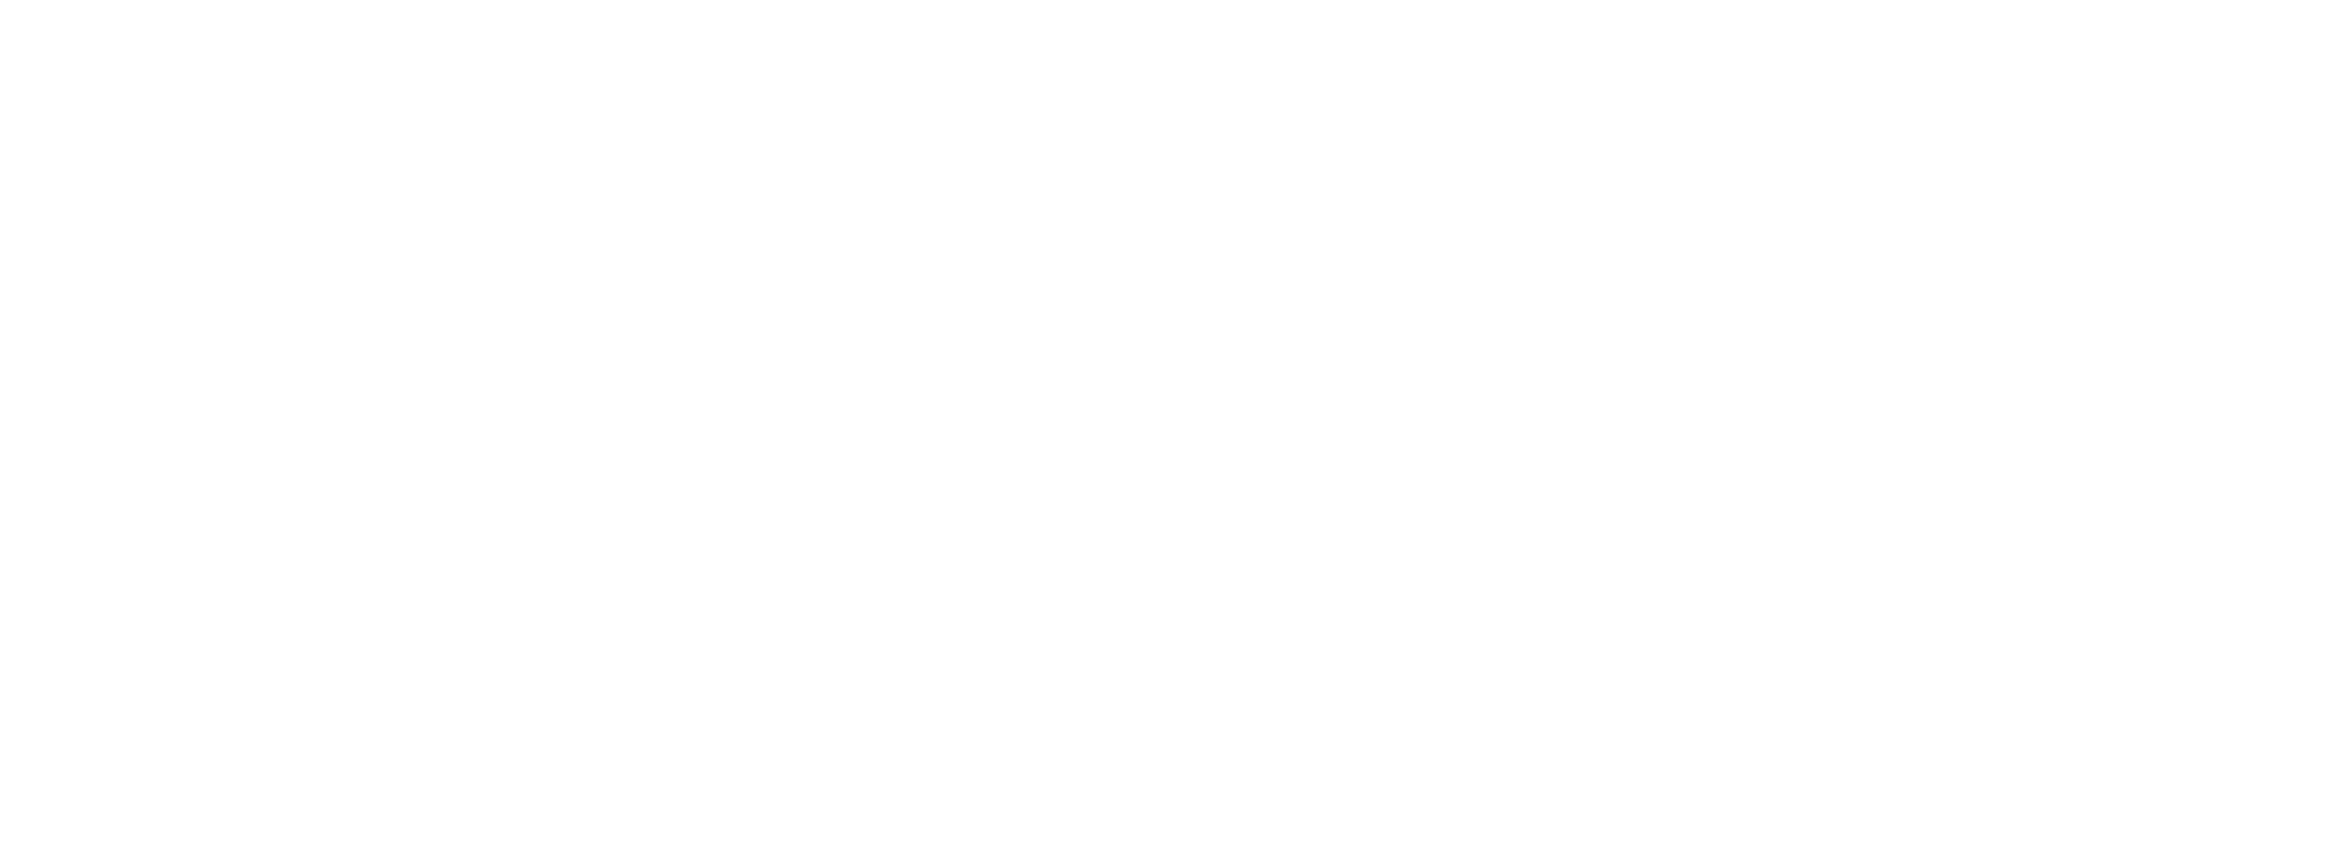 O2O Brand
            Protection